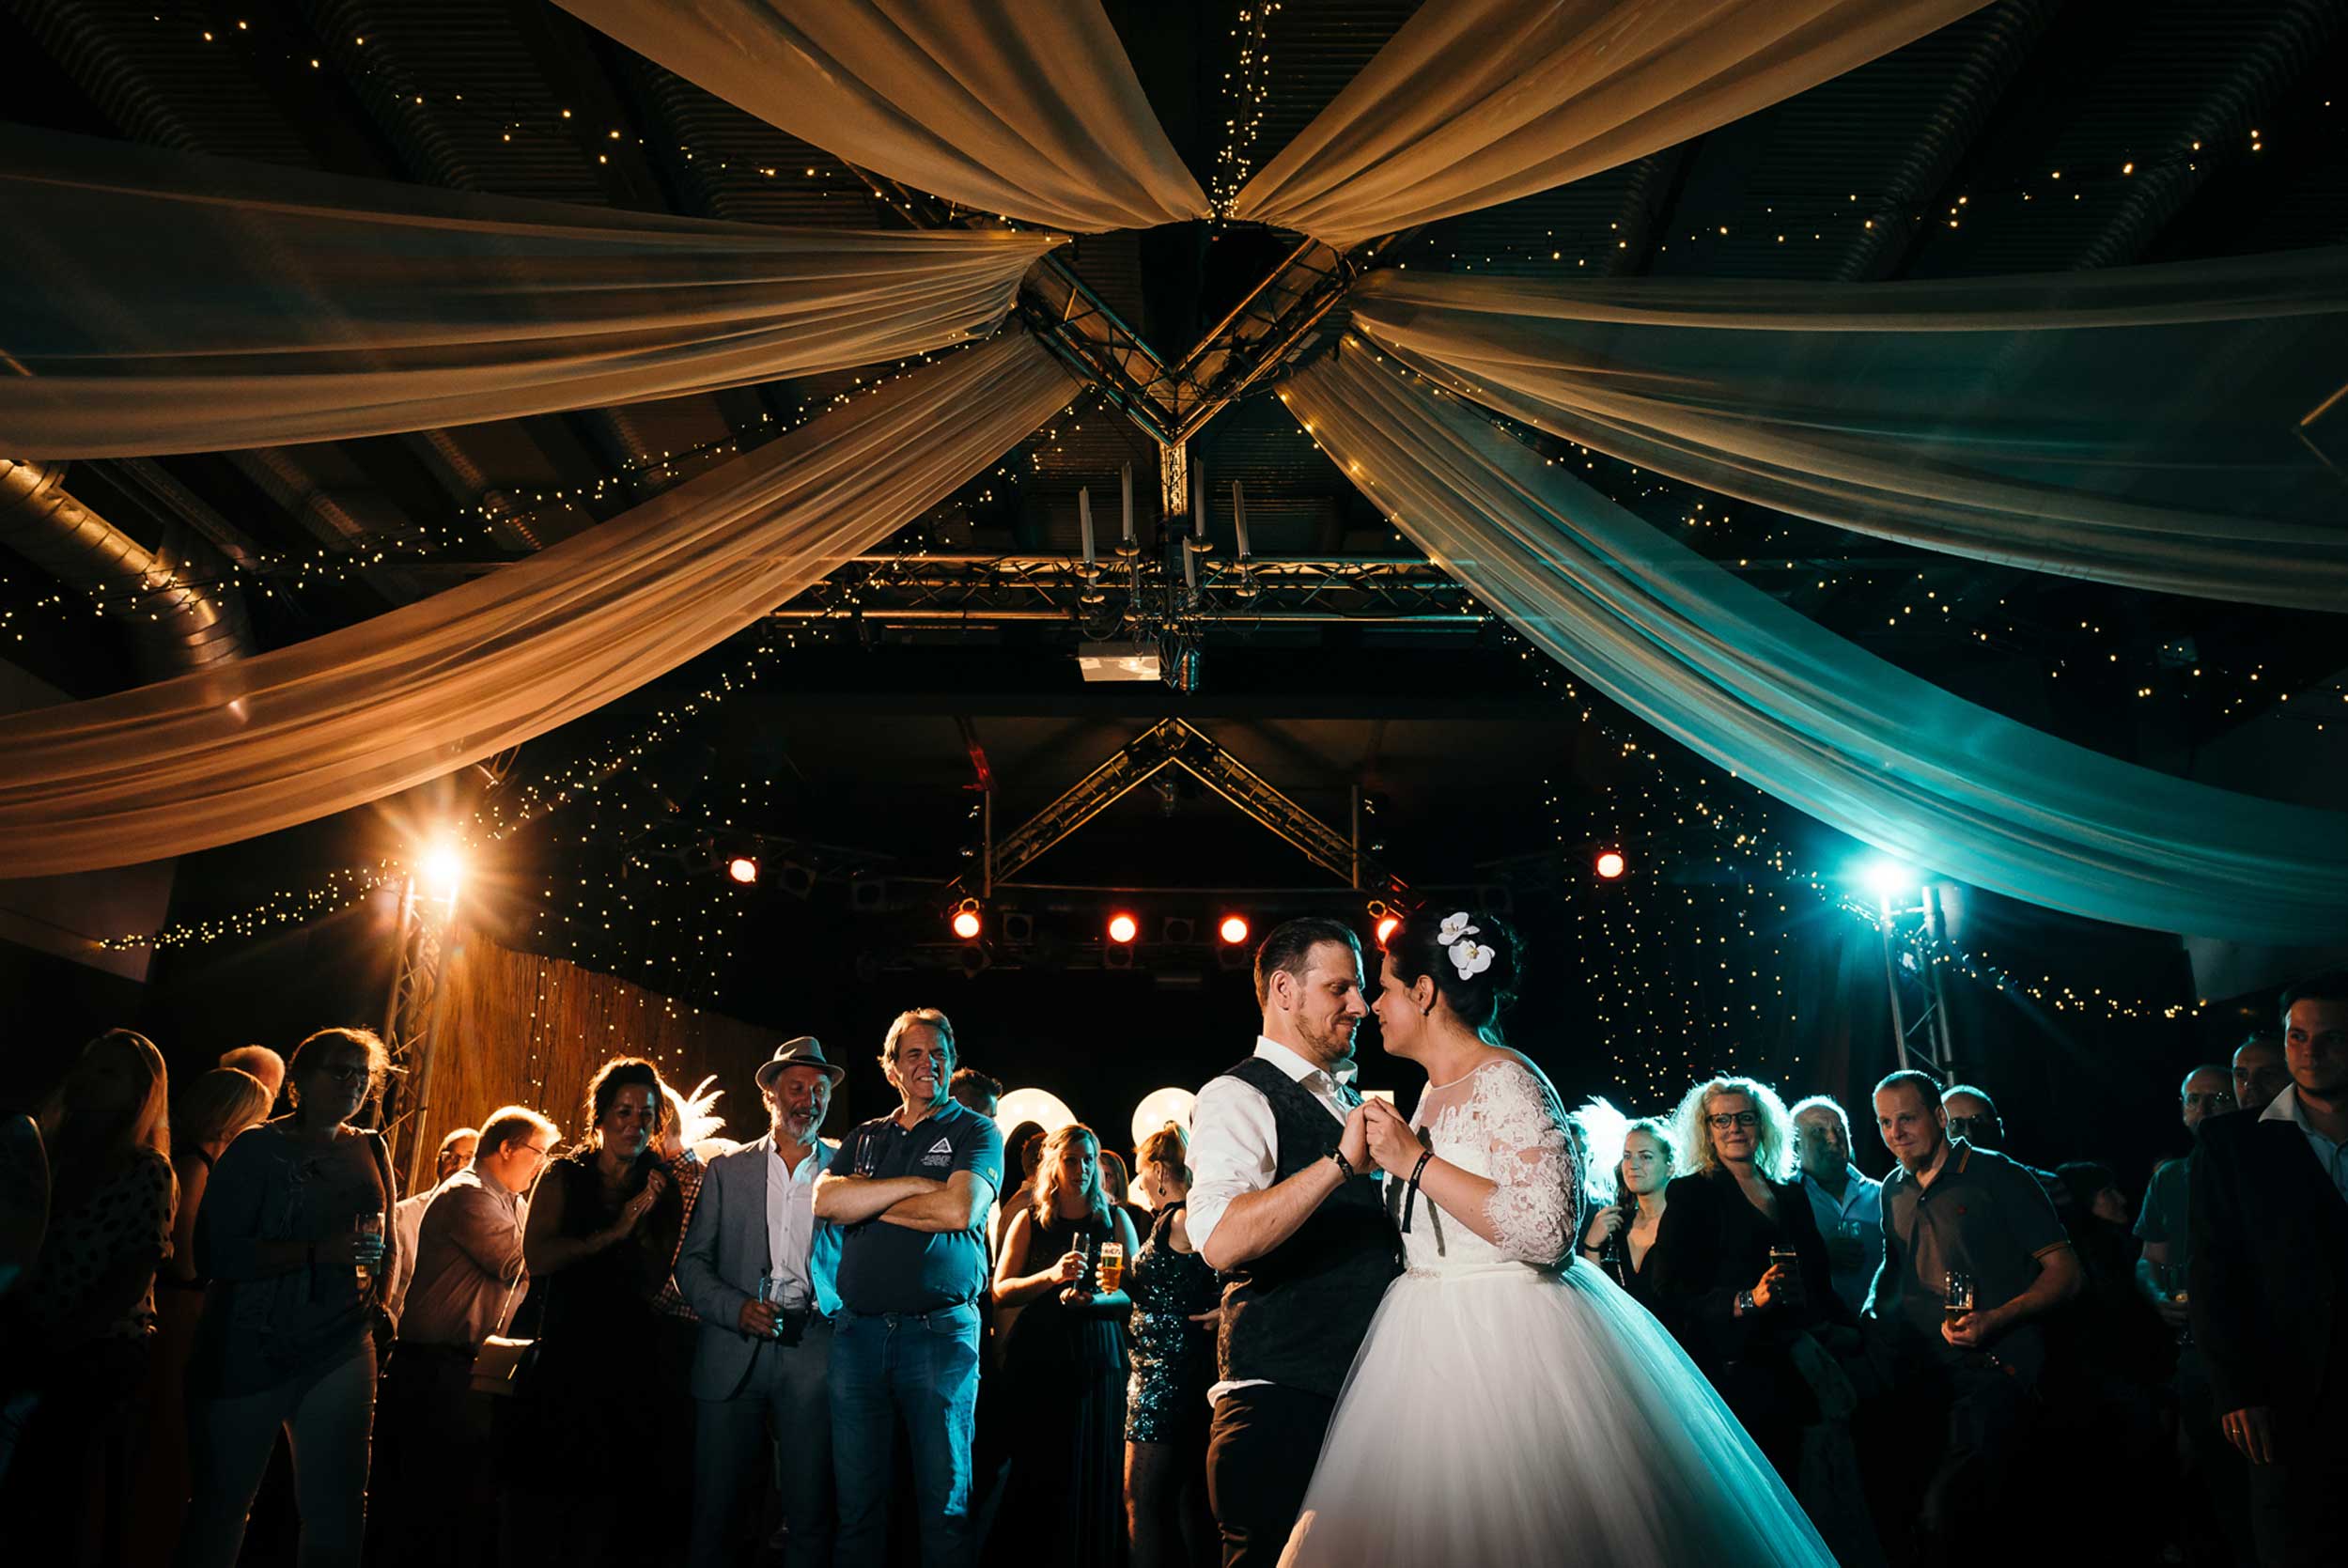 Magisch Moment: Topfoto van openingsdans, waar het bruidspaar fel afsteekt tegen de professioneel uitgelichte achtergrond in levendige kleuren.